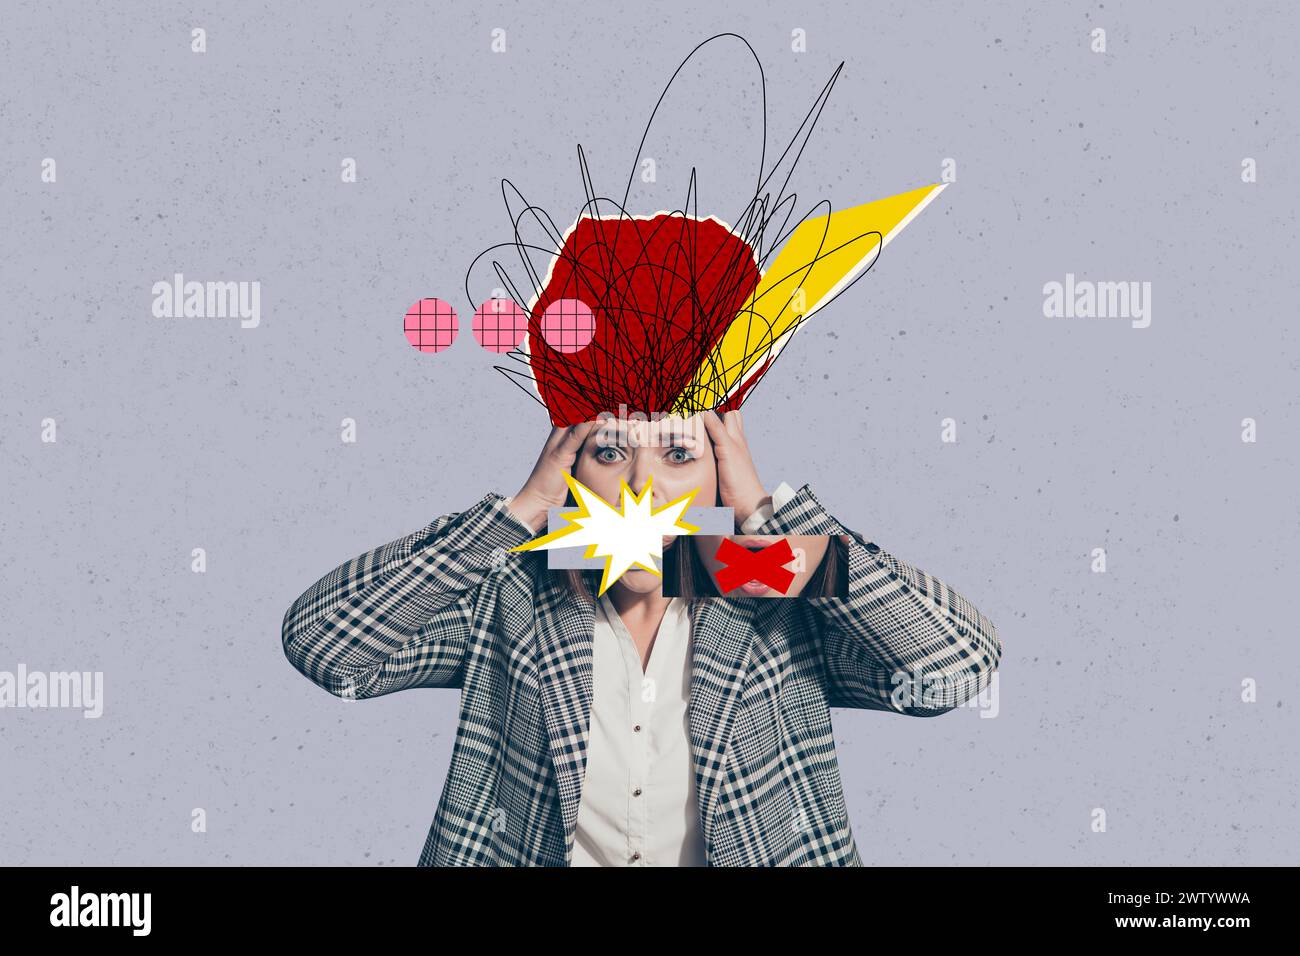 Collage fotografico immagine creativa giovane donna disordine caos disegnare scarabocchi stupore panico sovraccarico di lavoro problema mentale Foto Stock